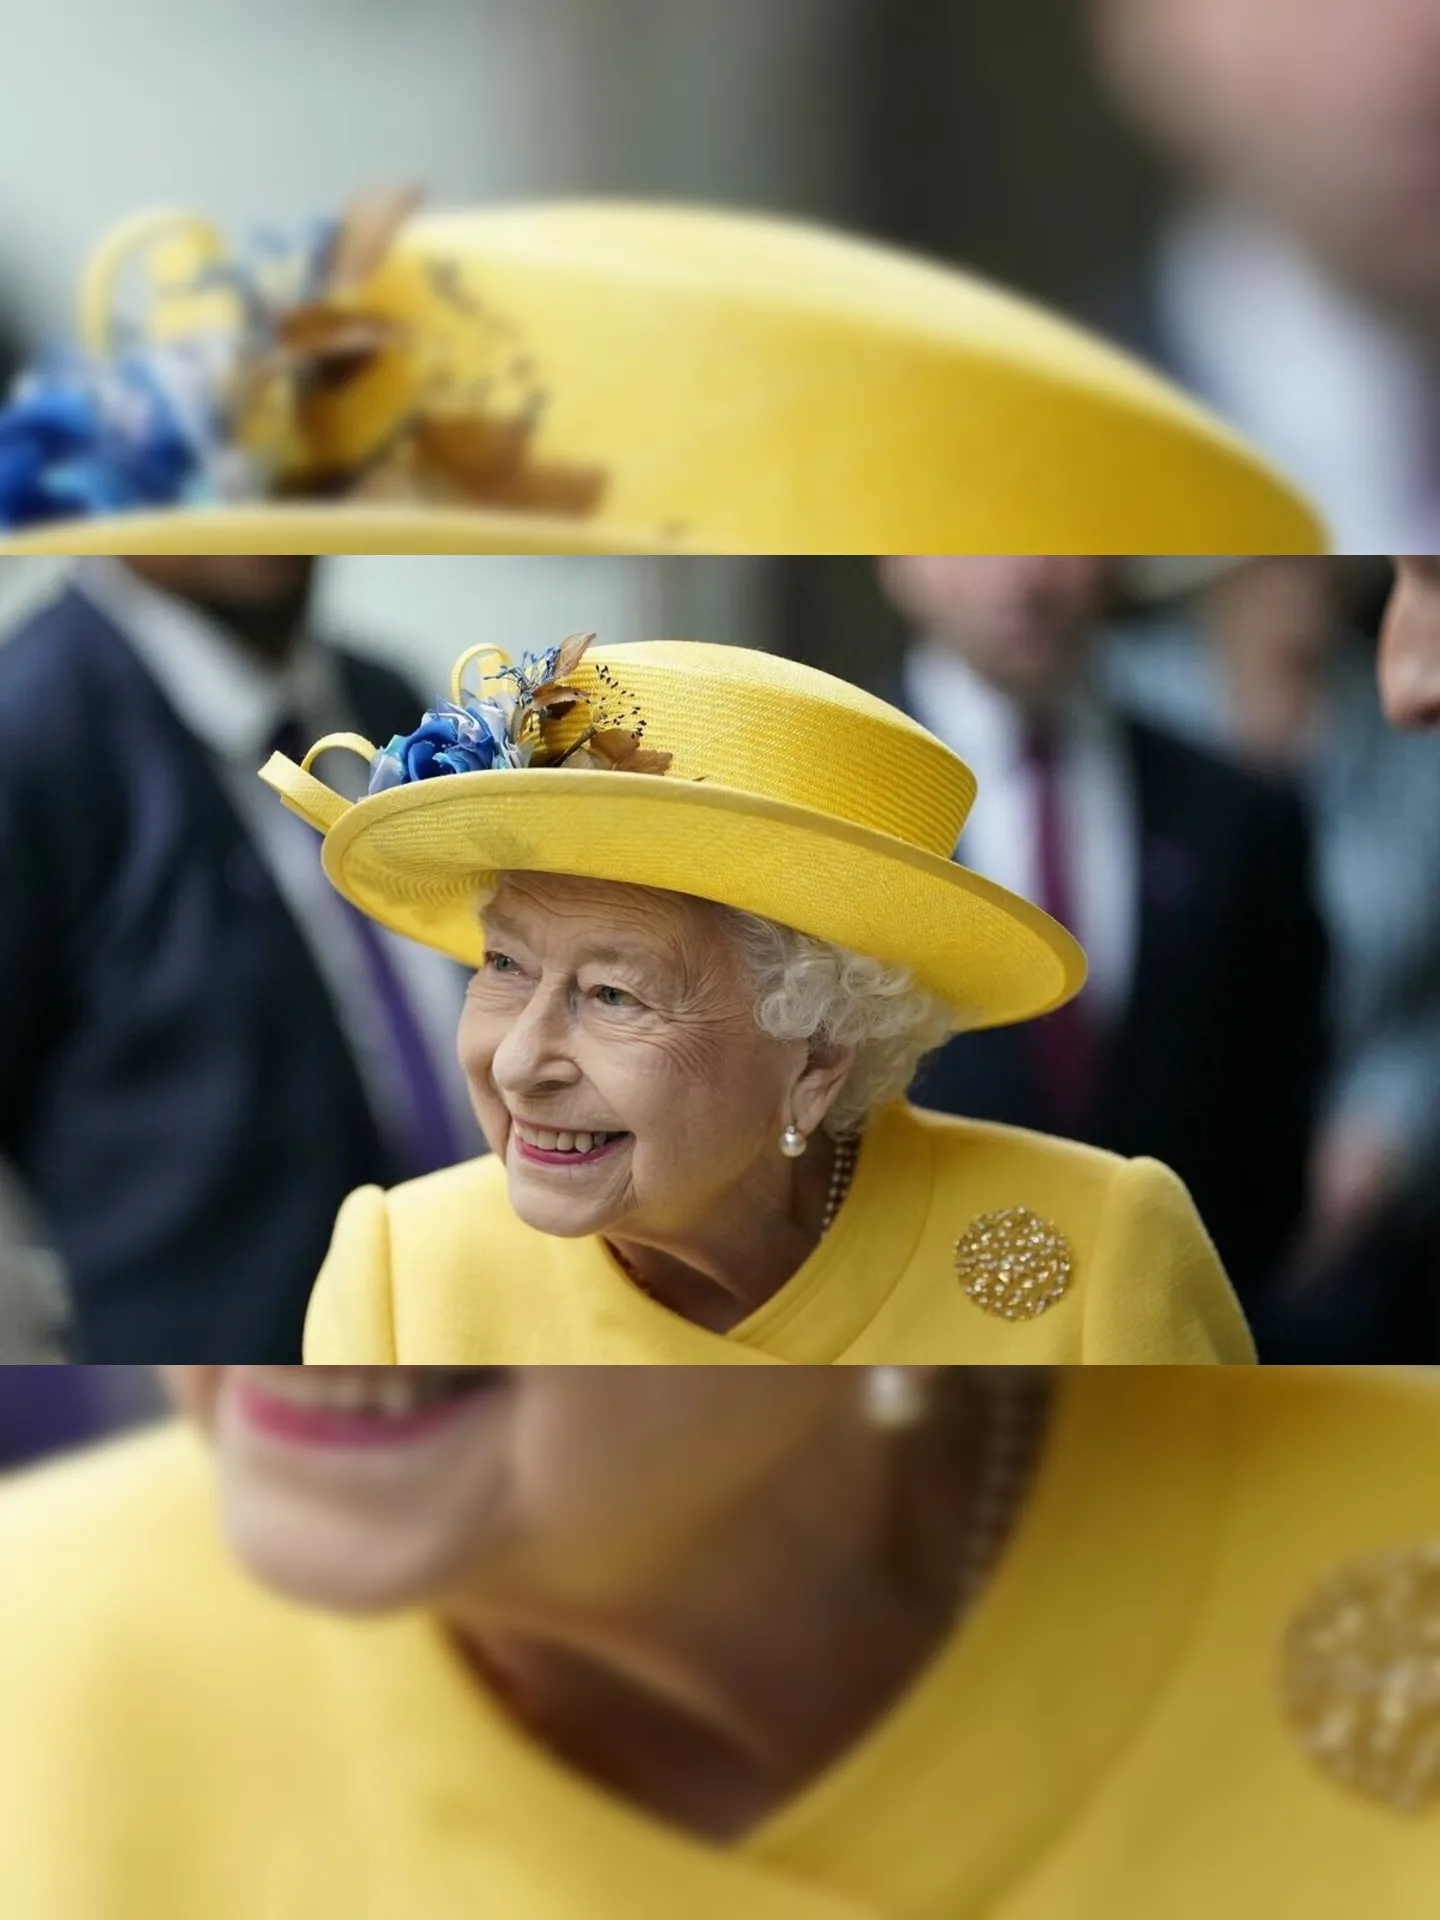 Milhares de pessoas se reuniram no entorno do Palácio de Buckingham para acompanhar a festividade, que celebra os 70 anos de reinado da monarca